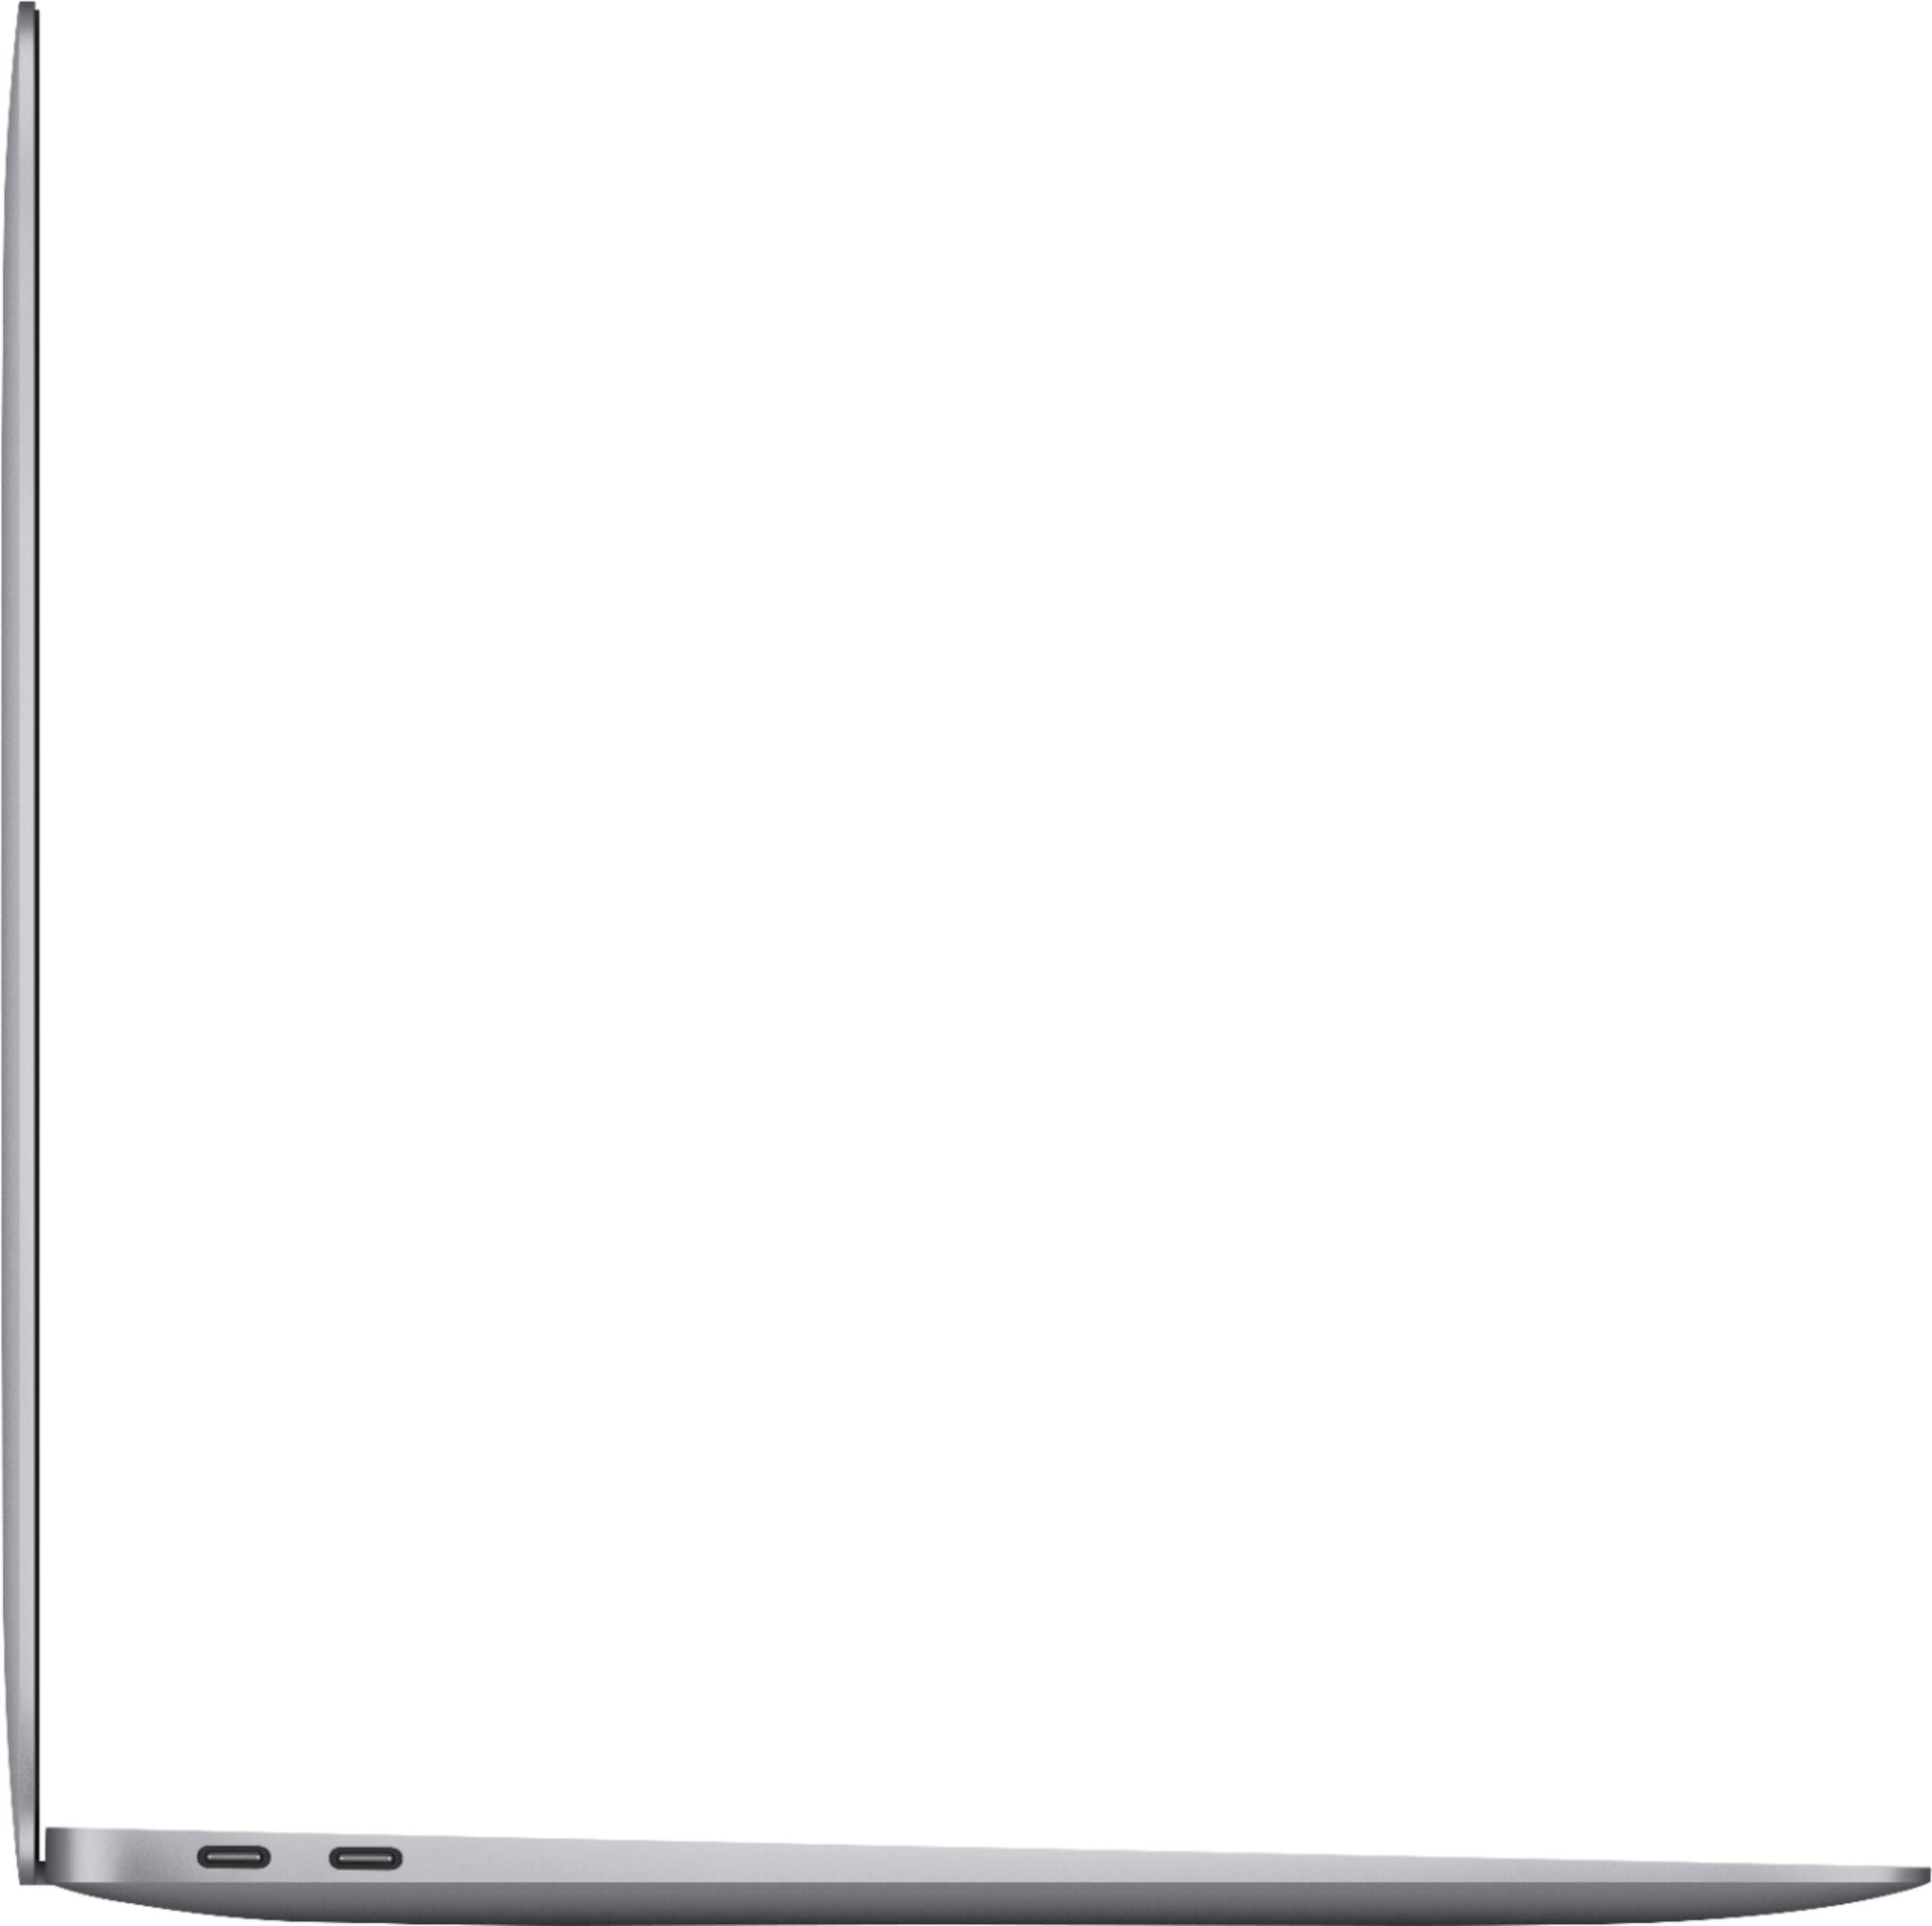 Certified Used MacBook Air-2020 M1 Chip-256GB